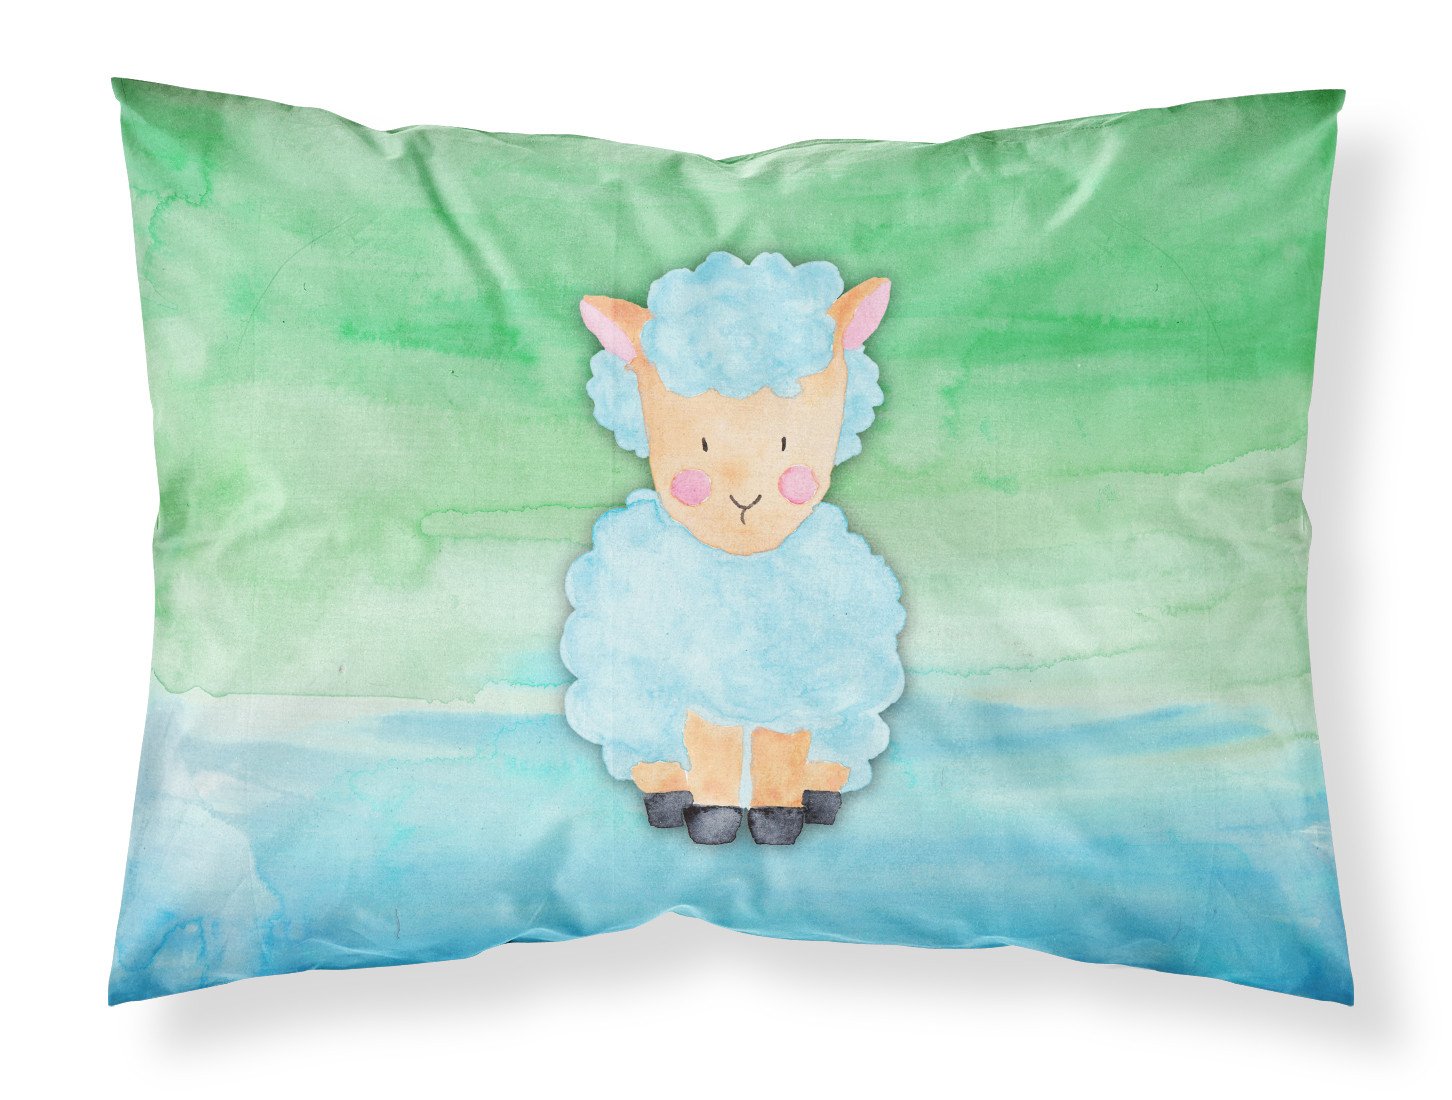 Sheep Lamb Watercolor Fabric Standard Pillowcase BB7414PILLOWCASE by Caroline's Treasures